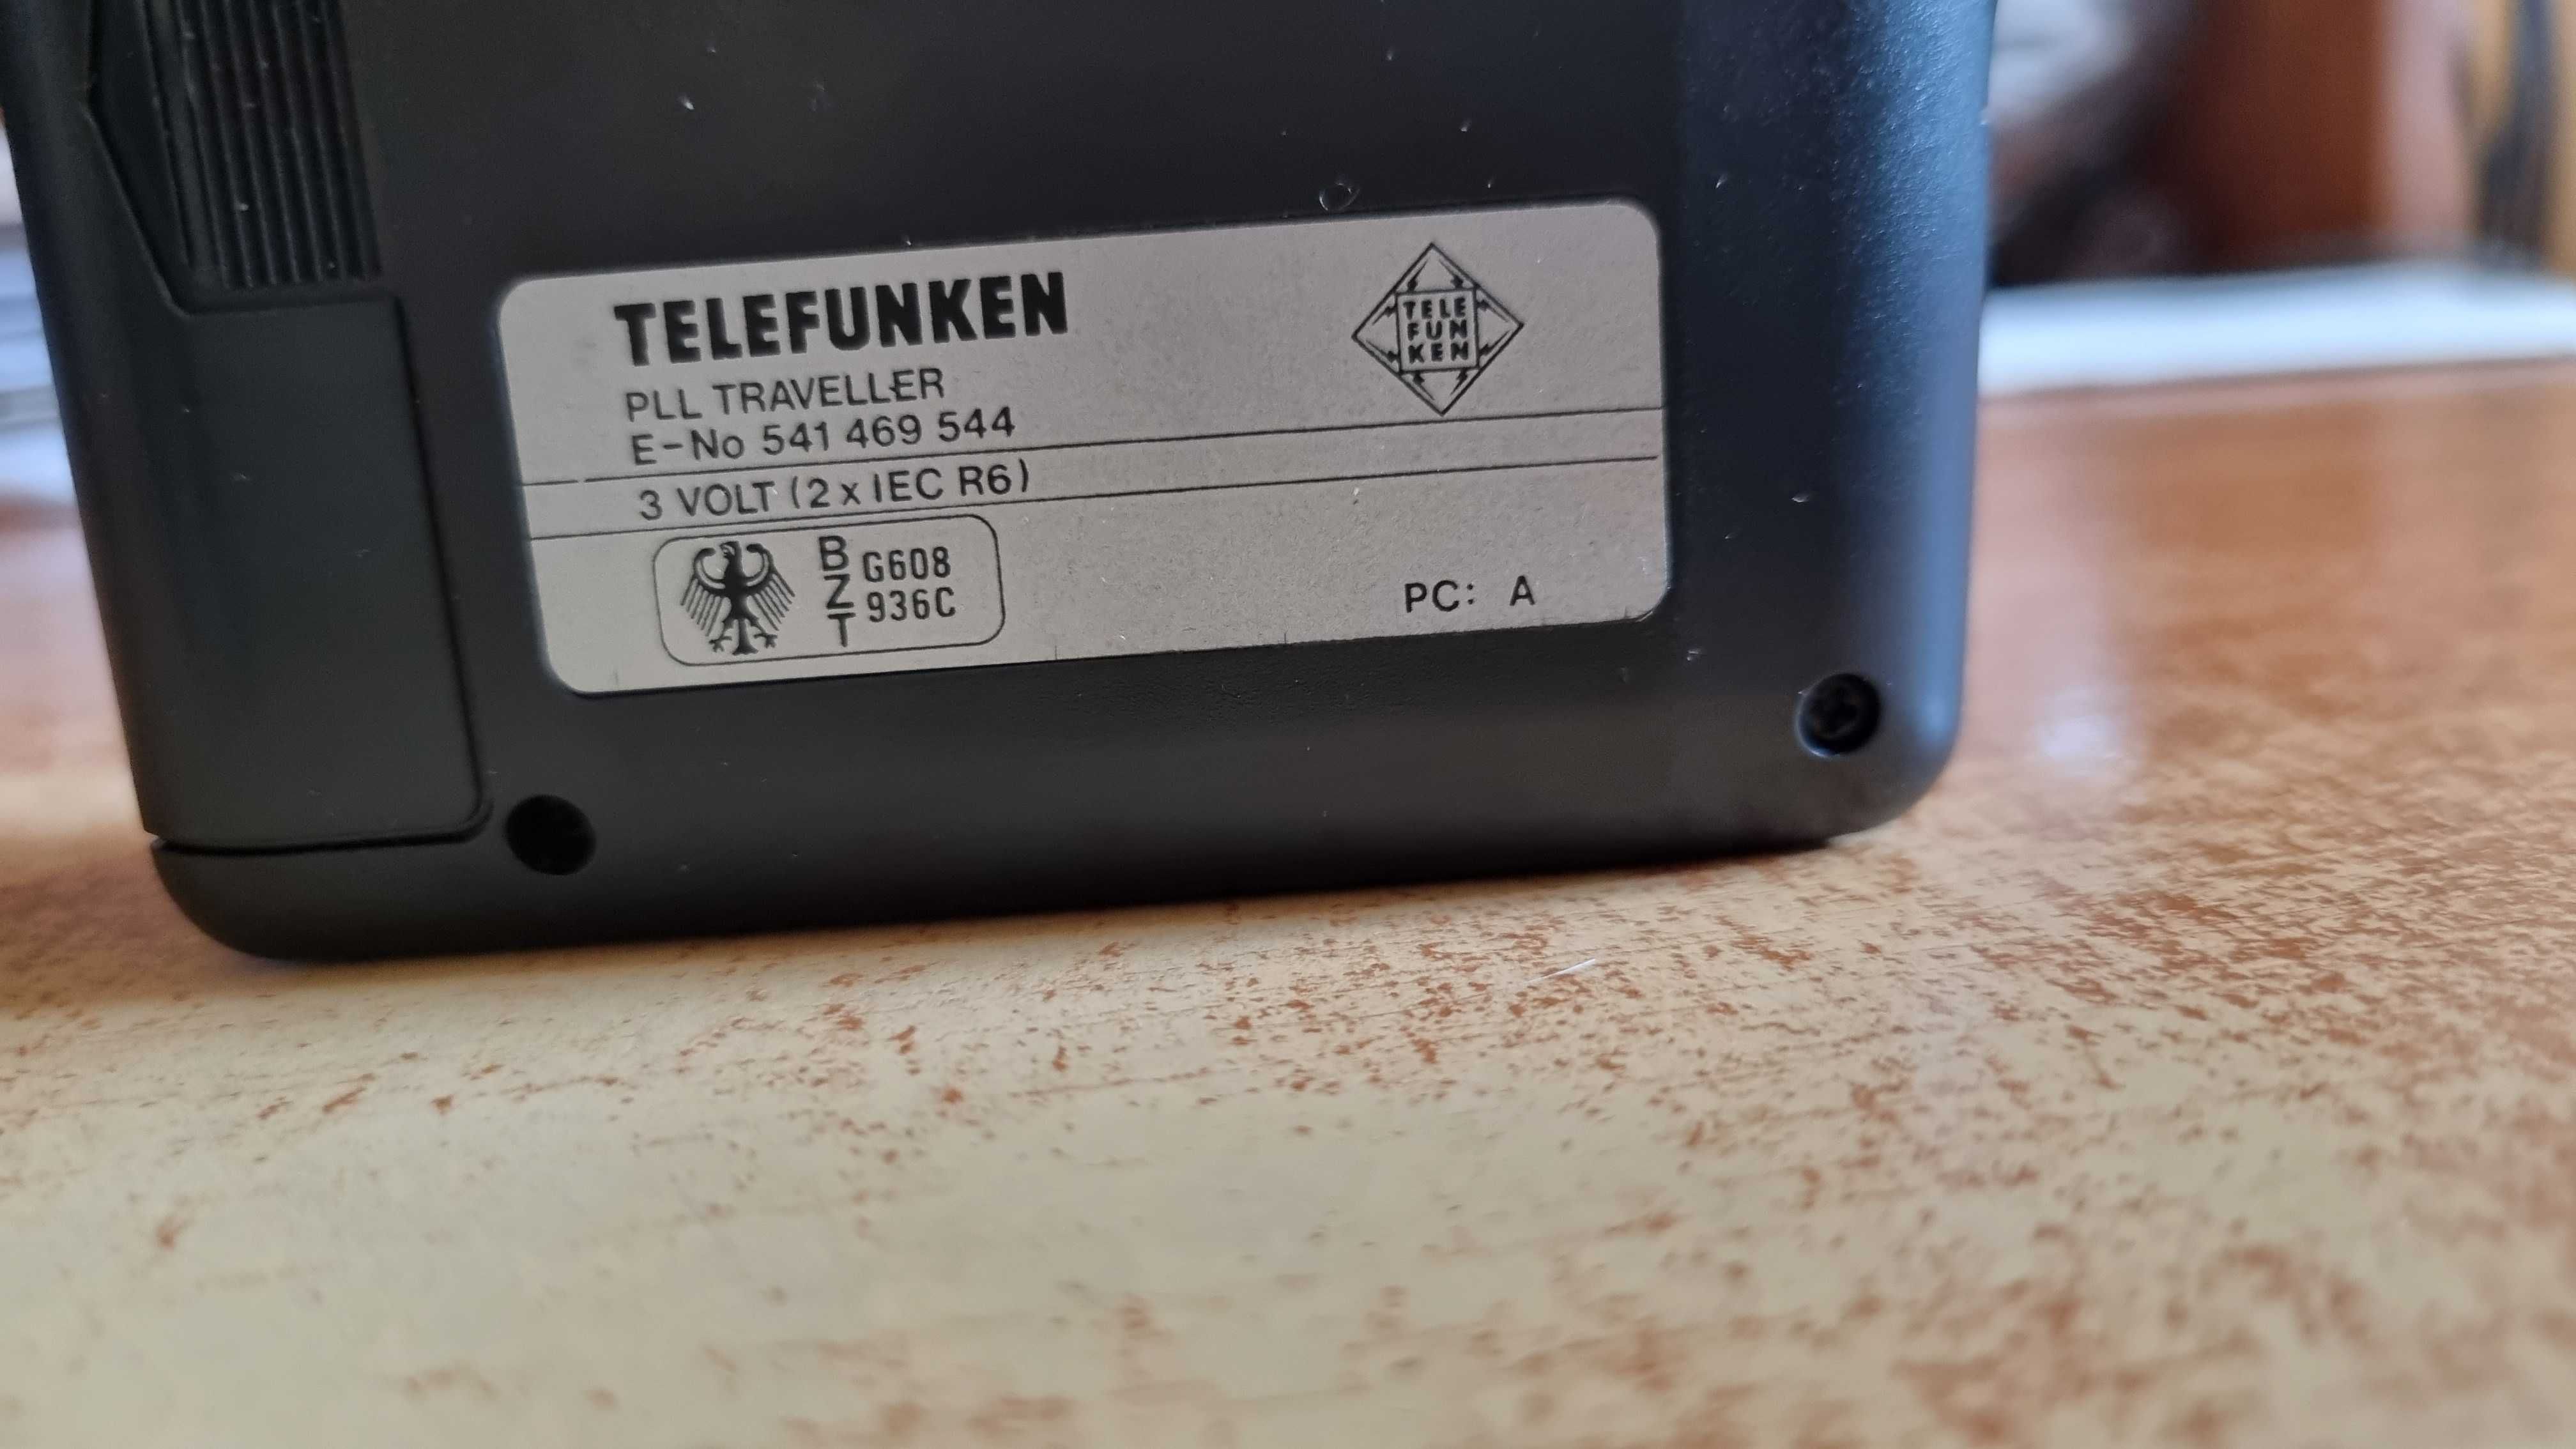 Sprzedam Walkman Telefunken Traveller z Radiem produkcji Niemieckiej